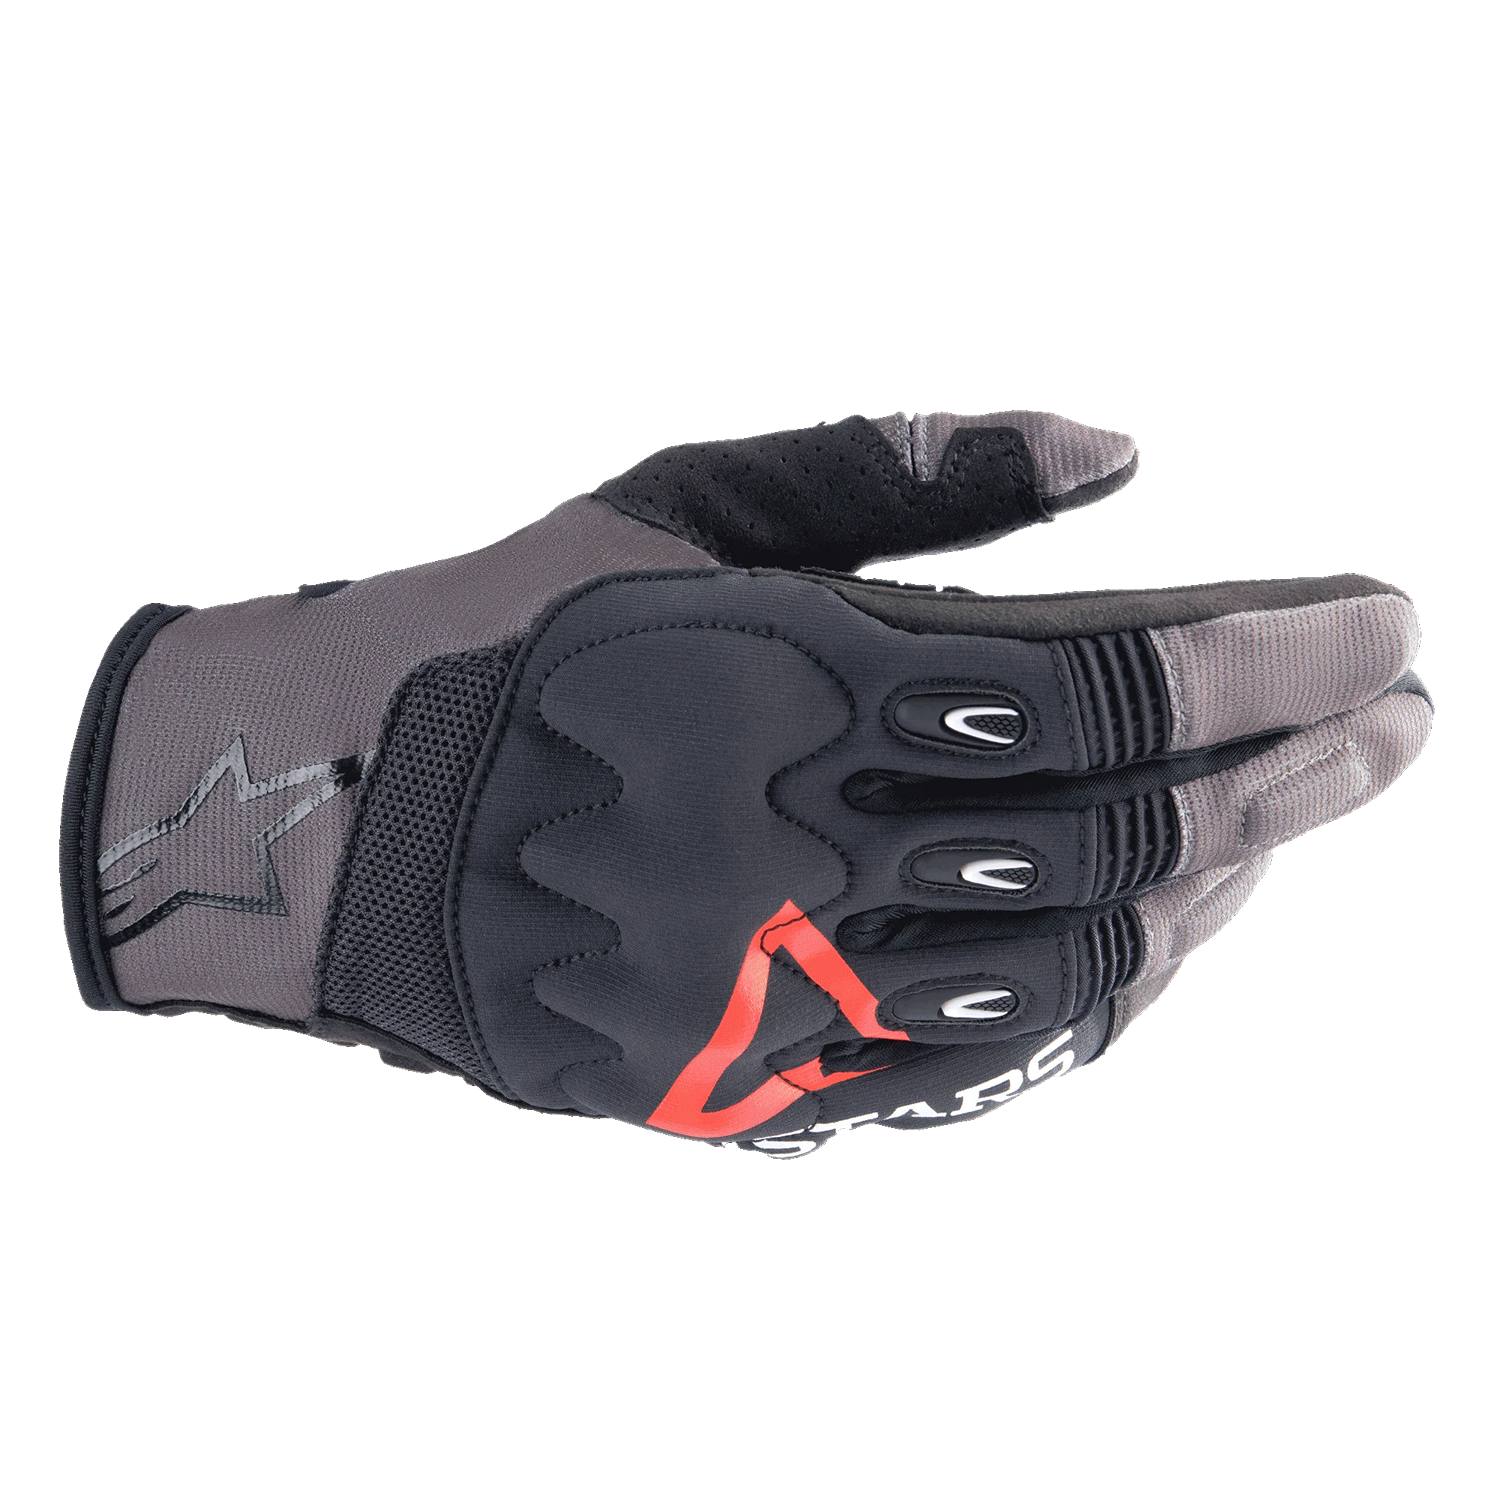 Image of Alpinestars Techdura Gloves Falcon Brown Size L ID 8059347258010